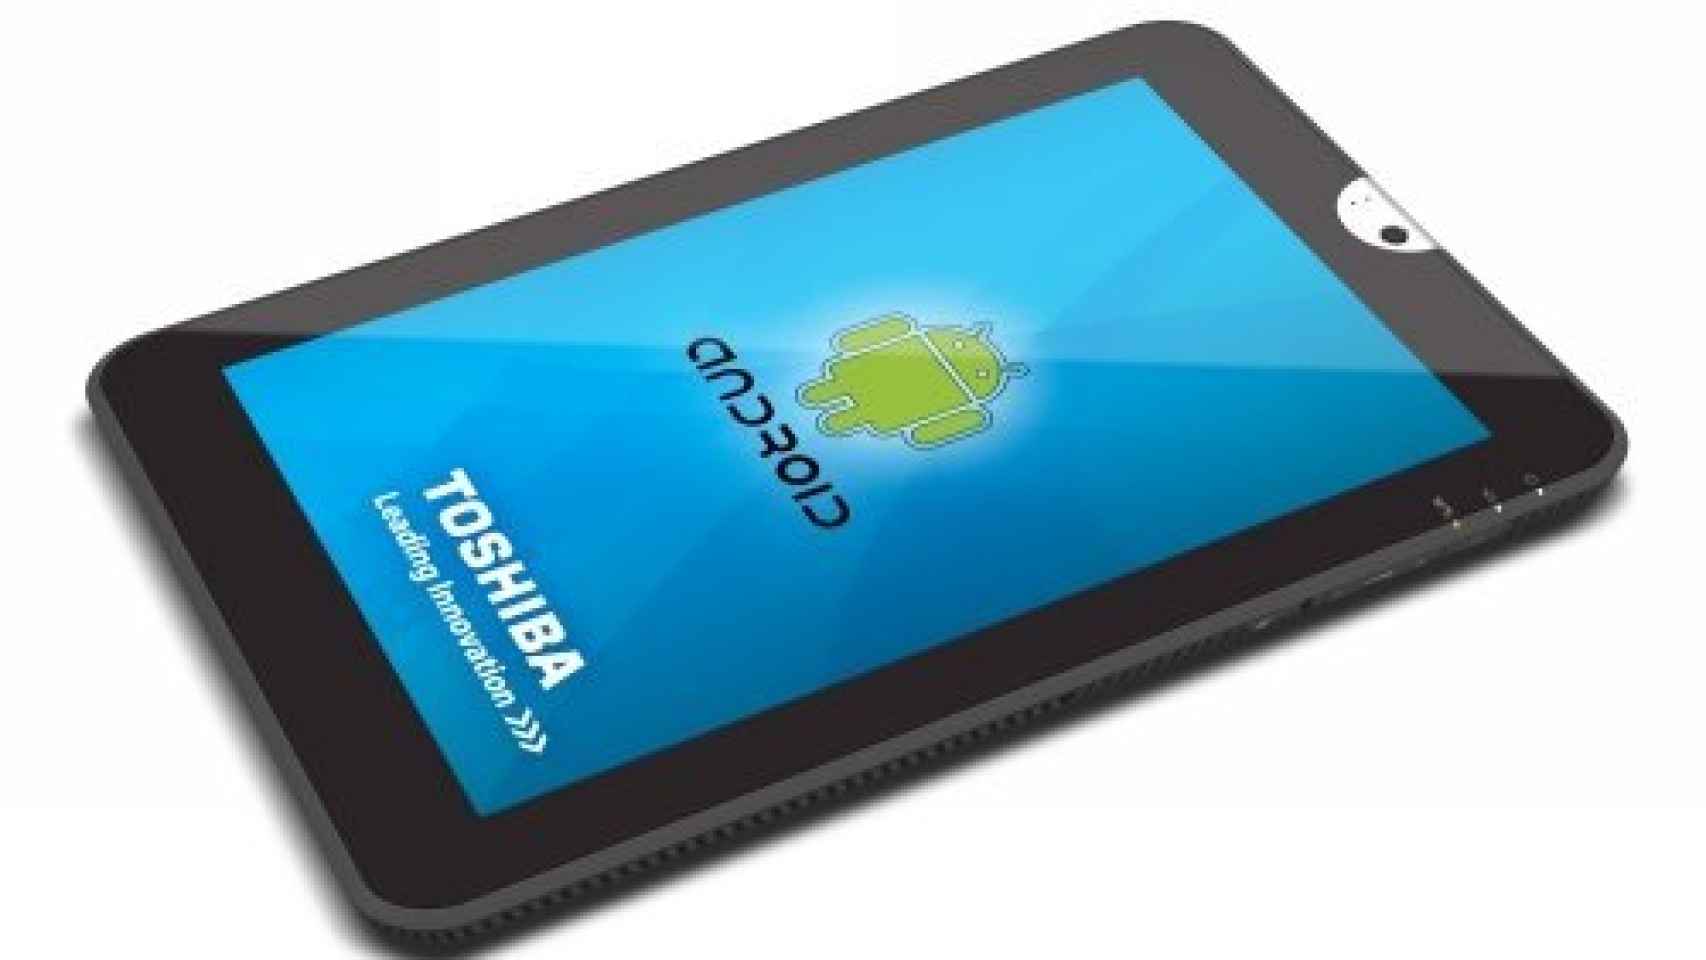 Toshiba ANT, la nueva tablet con Honeycomb.